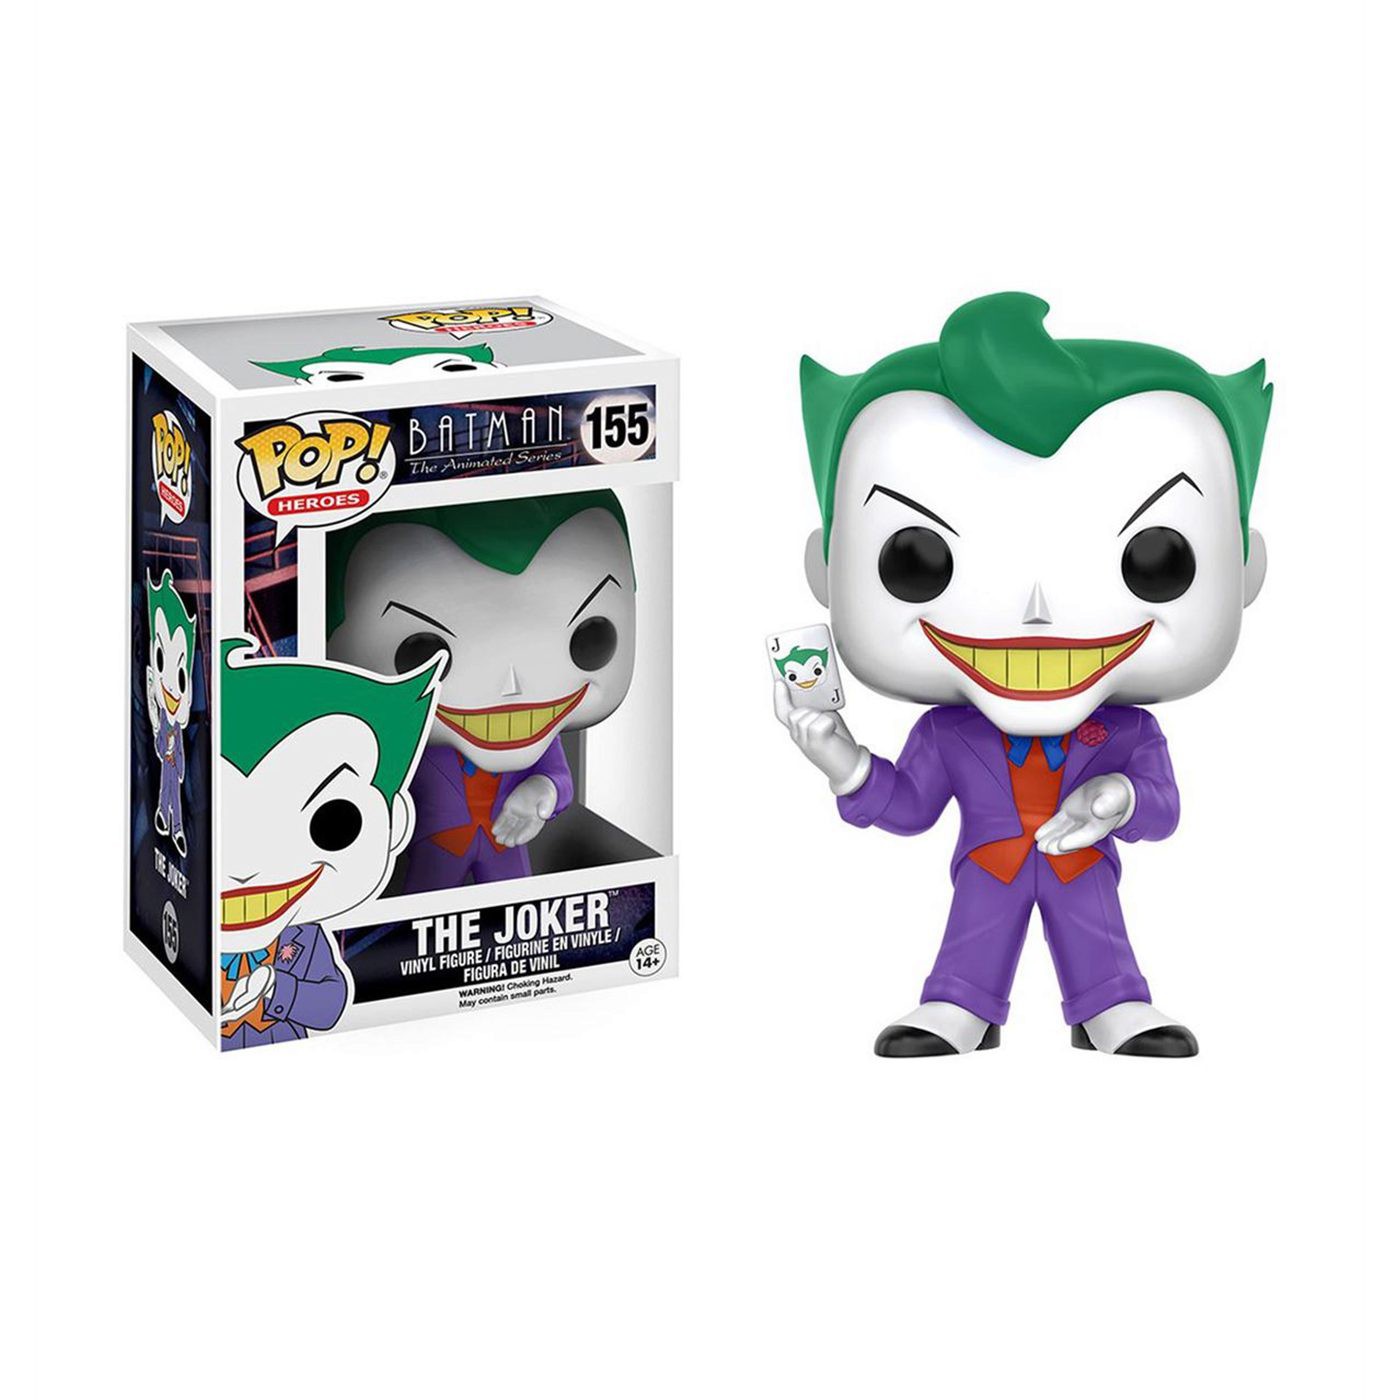 Joker Animated Funko Pop Vinyl Figure